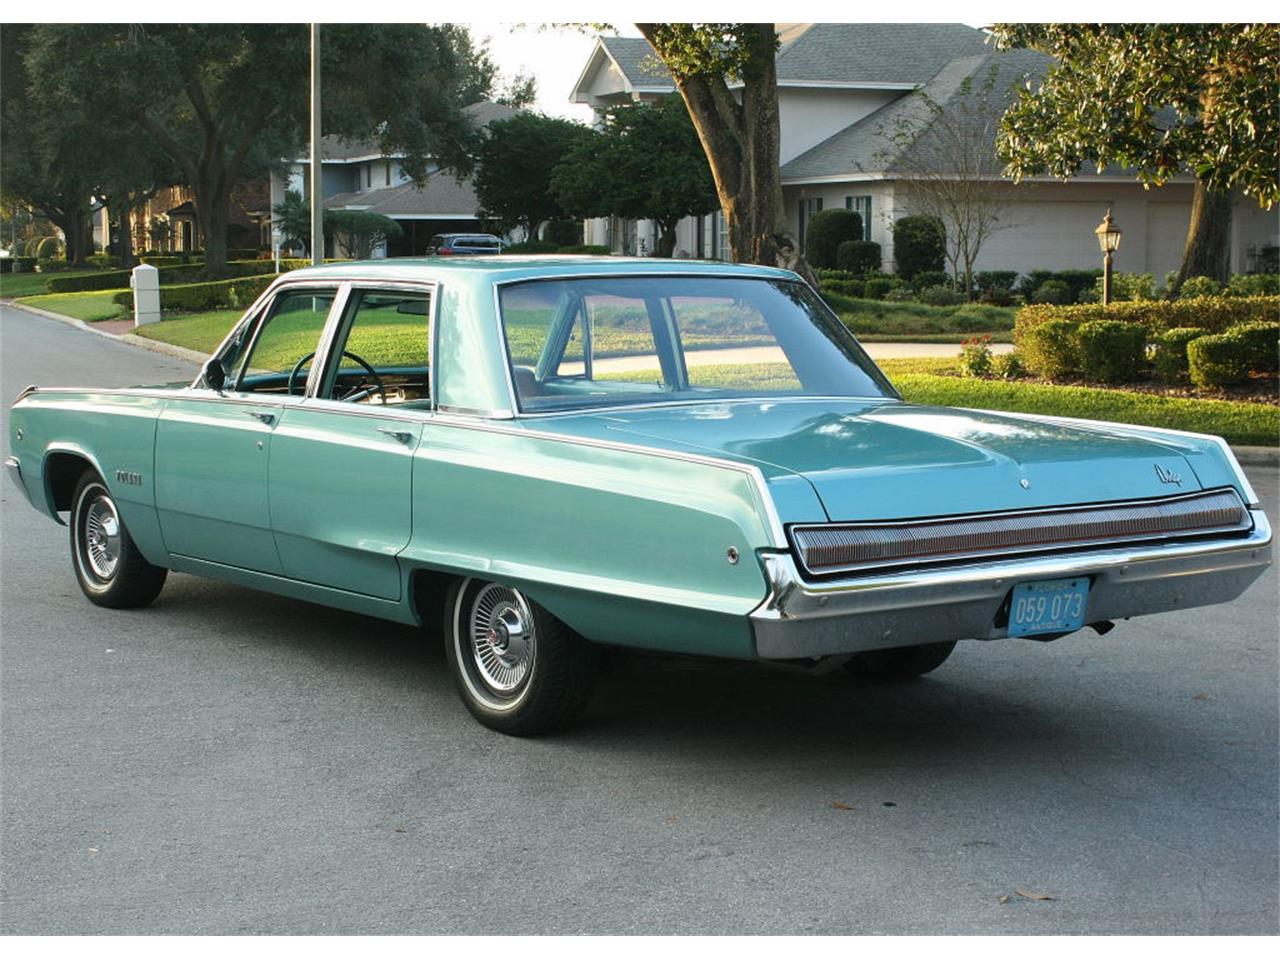 1968 Dodge Polara for Sale | ClassicCars.com | CC-944982